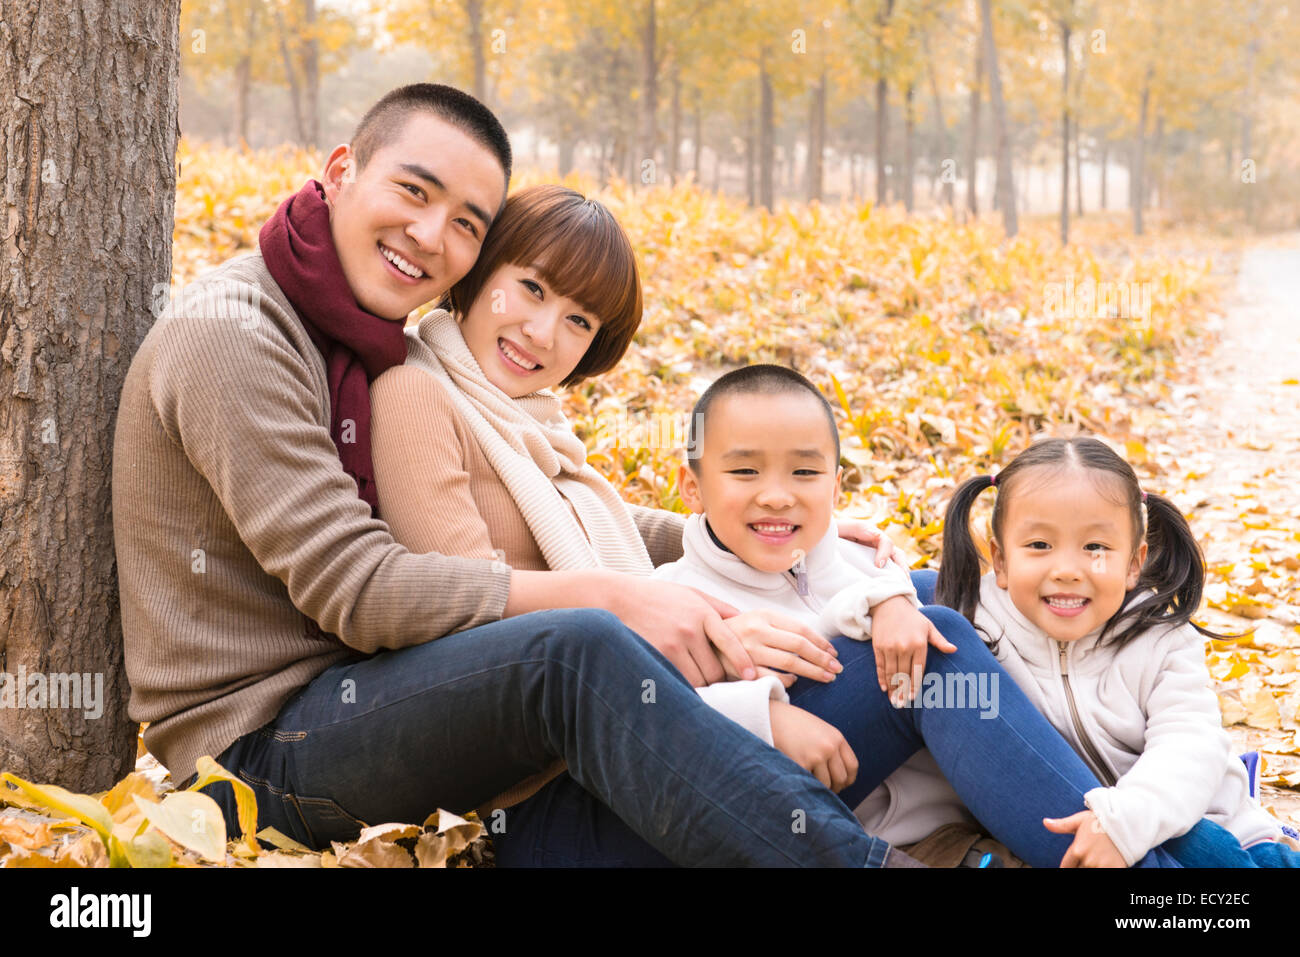 Familia con dos niños en el parque Foto de stock